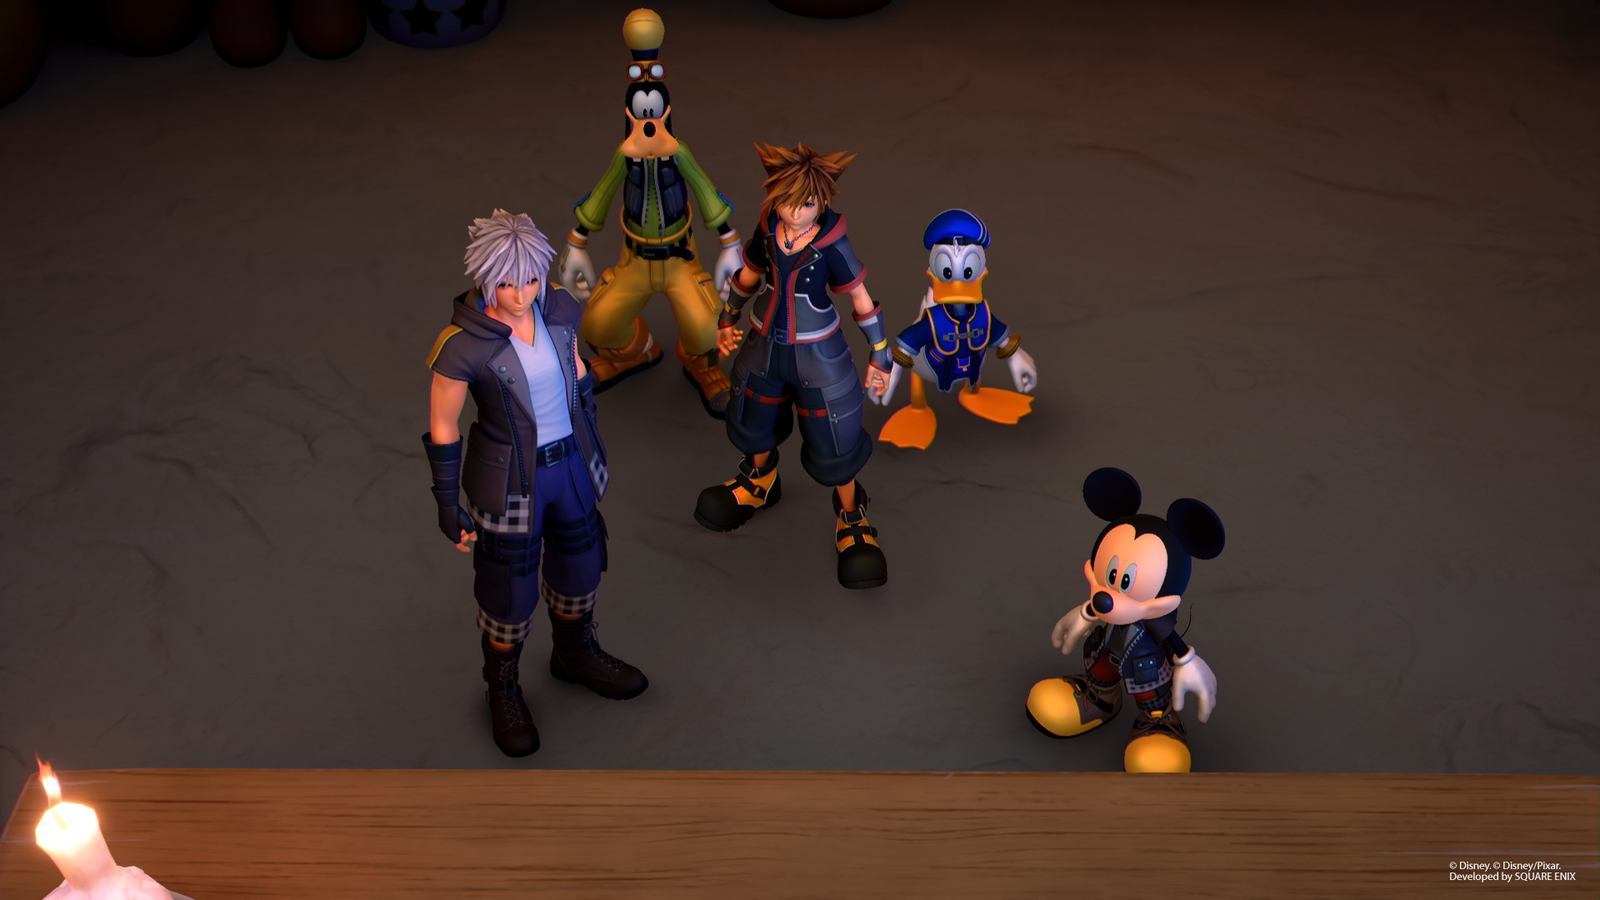 Kingdom Hearts 3 voice actors